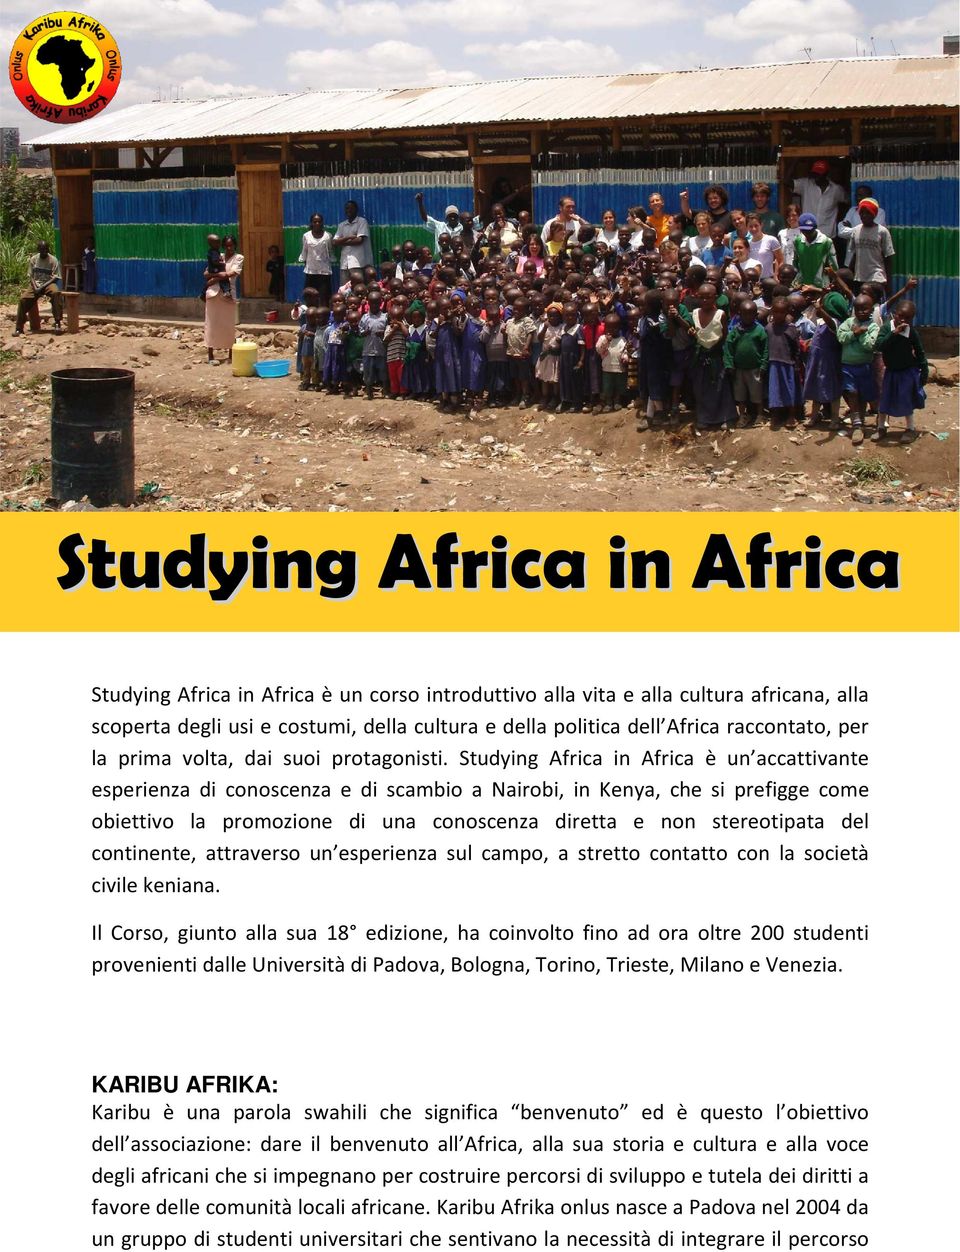 Studying Africa in Africa è un accattivante esperienza di conoscenza e di scambio a Nairobi, in Kenya, che si prefigge come obiettivo la promozione di una conoscenza diretta e non stereotipata del